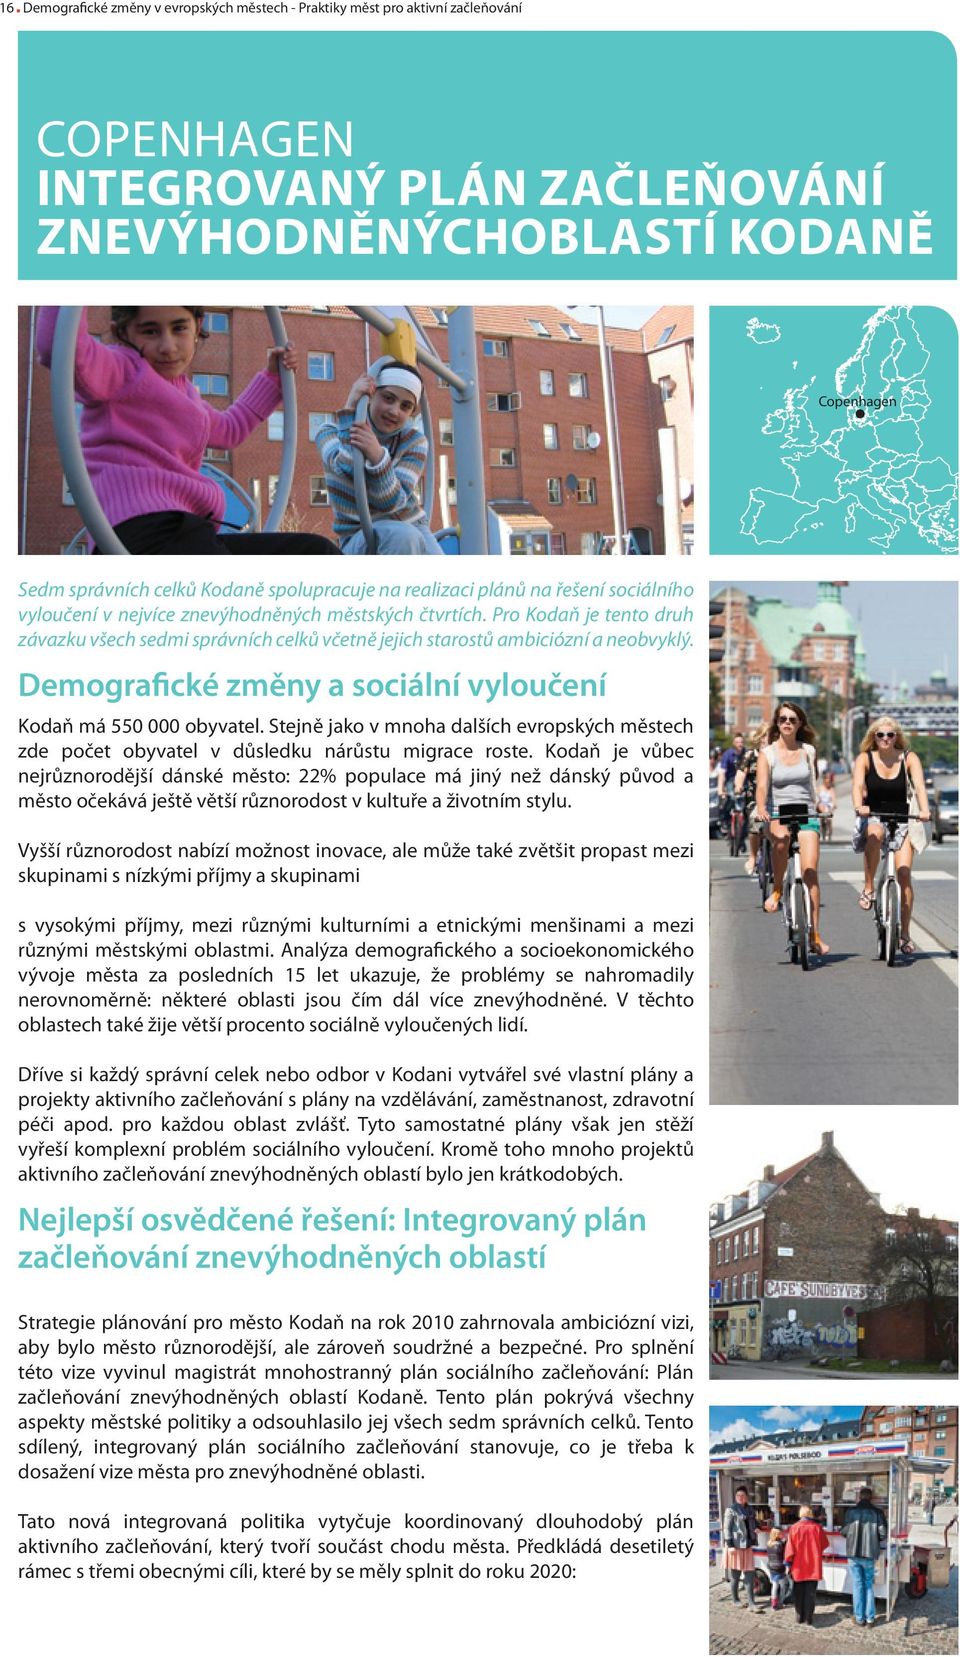 Pro Kodaň je tento druh závazku všech sedmi správních celků včetně jejich starostů ambiciózní a neobvyklý. Demografické změny a sociální vyloučení Kodaň má 550 000 obyvatel.